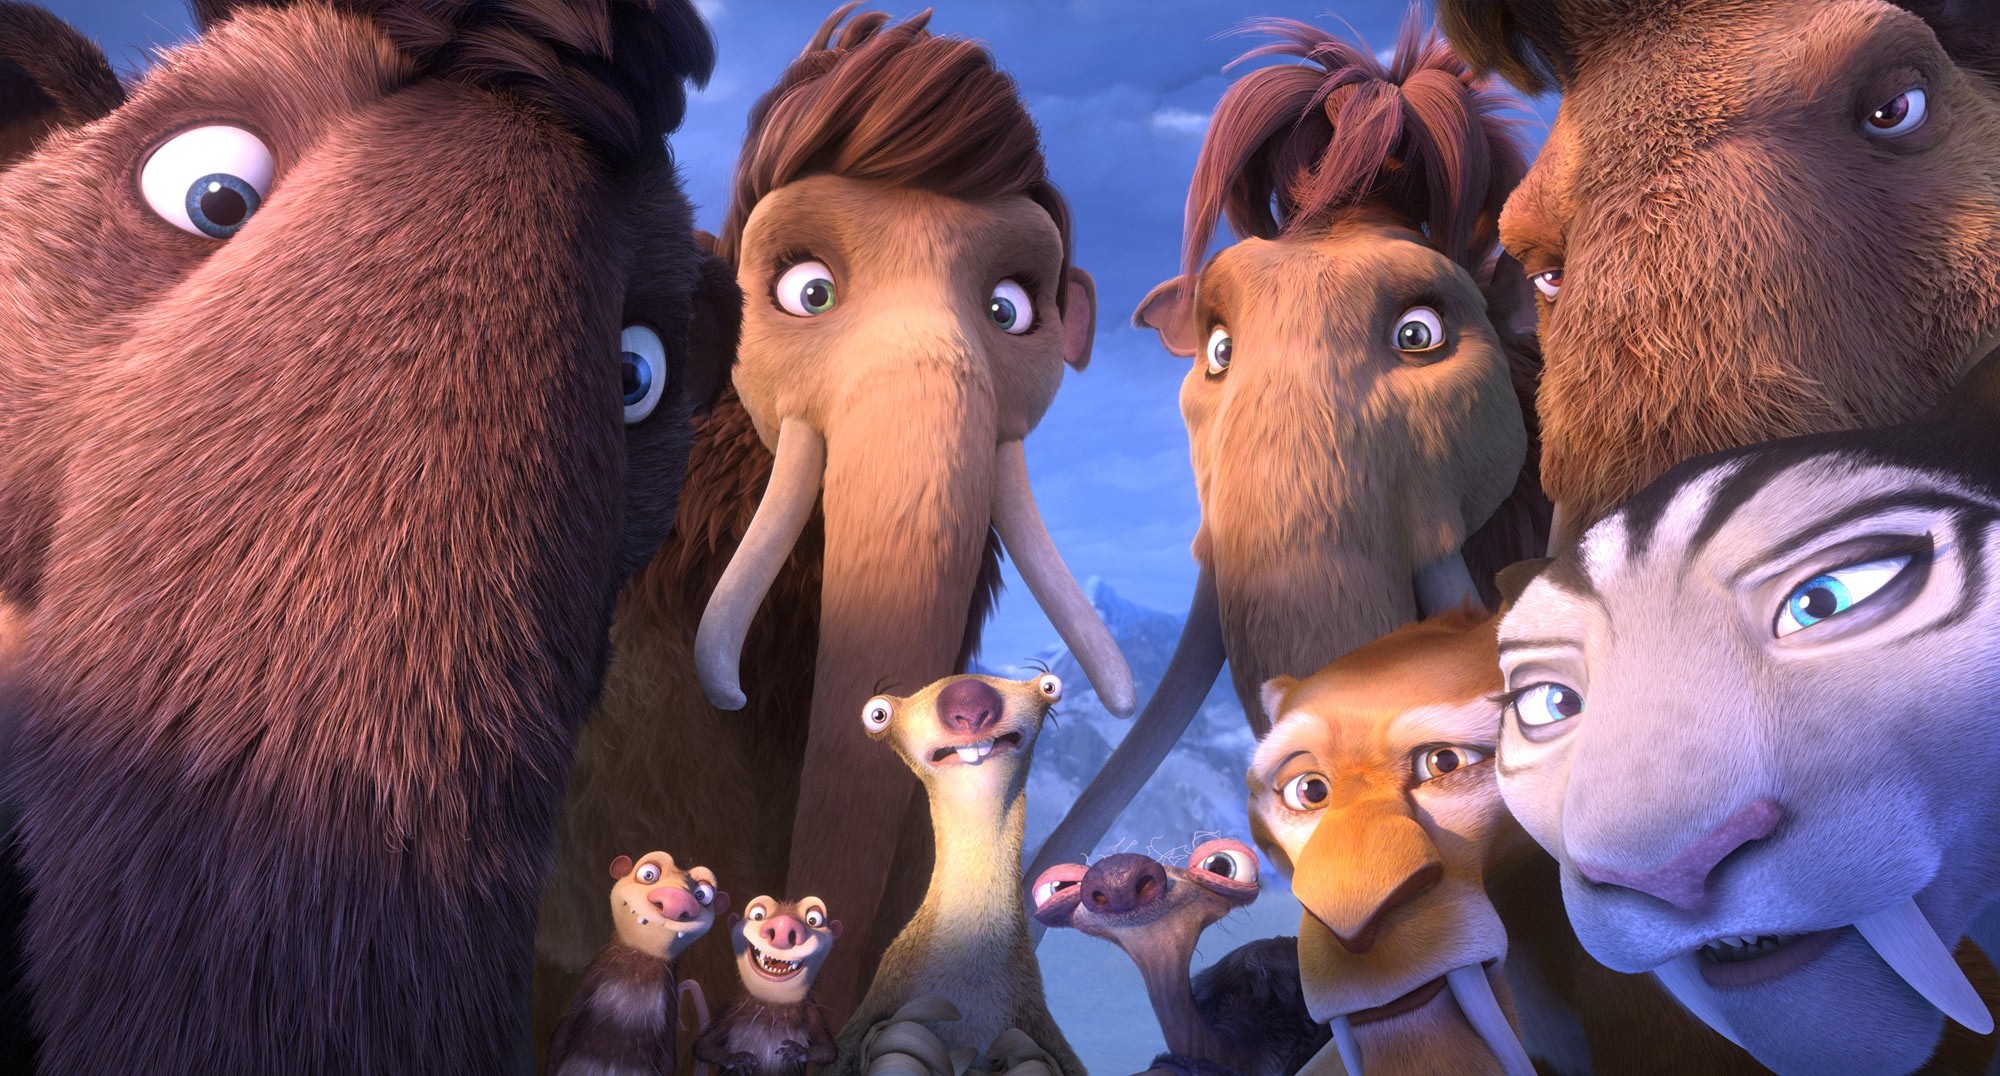 Os mamutes Julian, Amora, Ellie e Manny. Os irmãos gambás Crash e Eddie. As preguiças Sid e sua avó. Os tigres dente-de-sabre Diego e Shira (Foto: Fox)